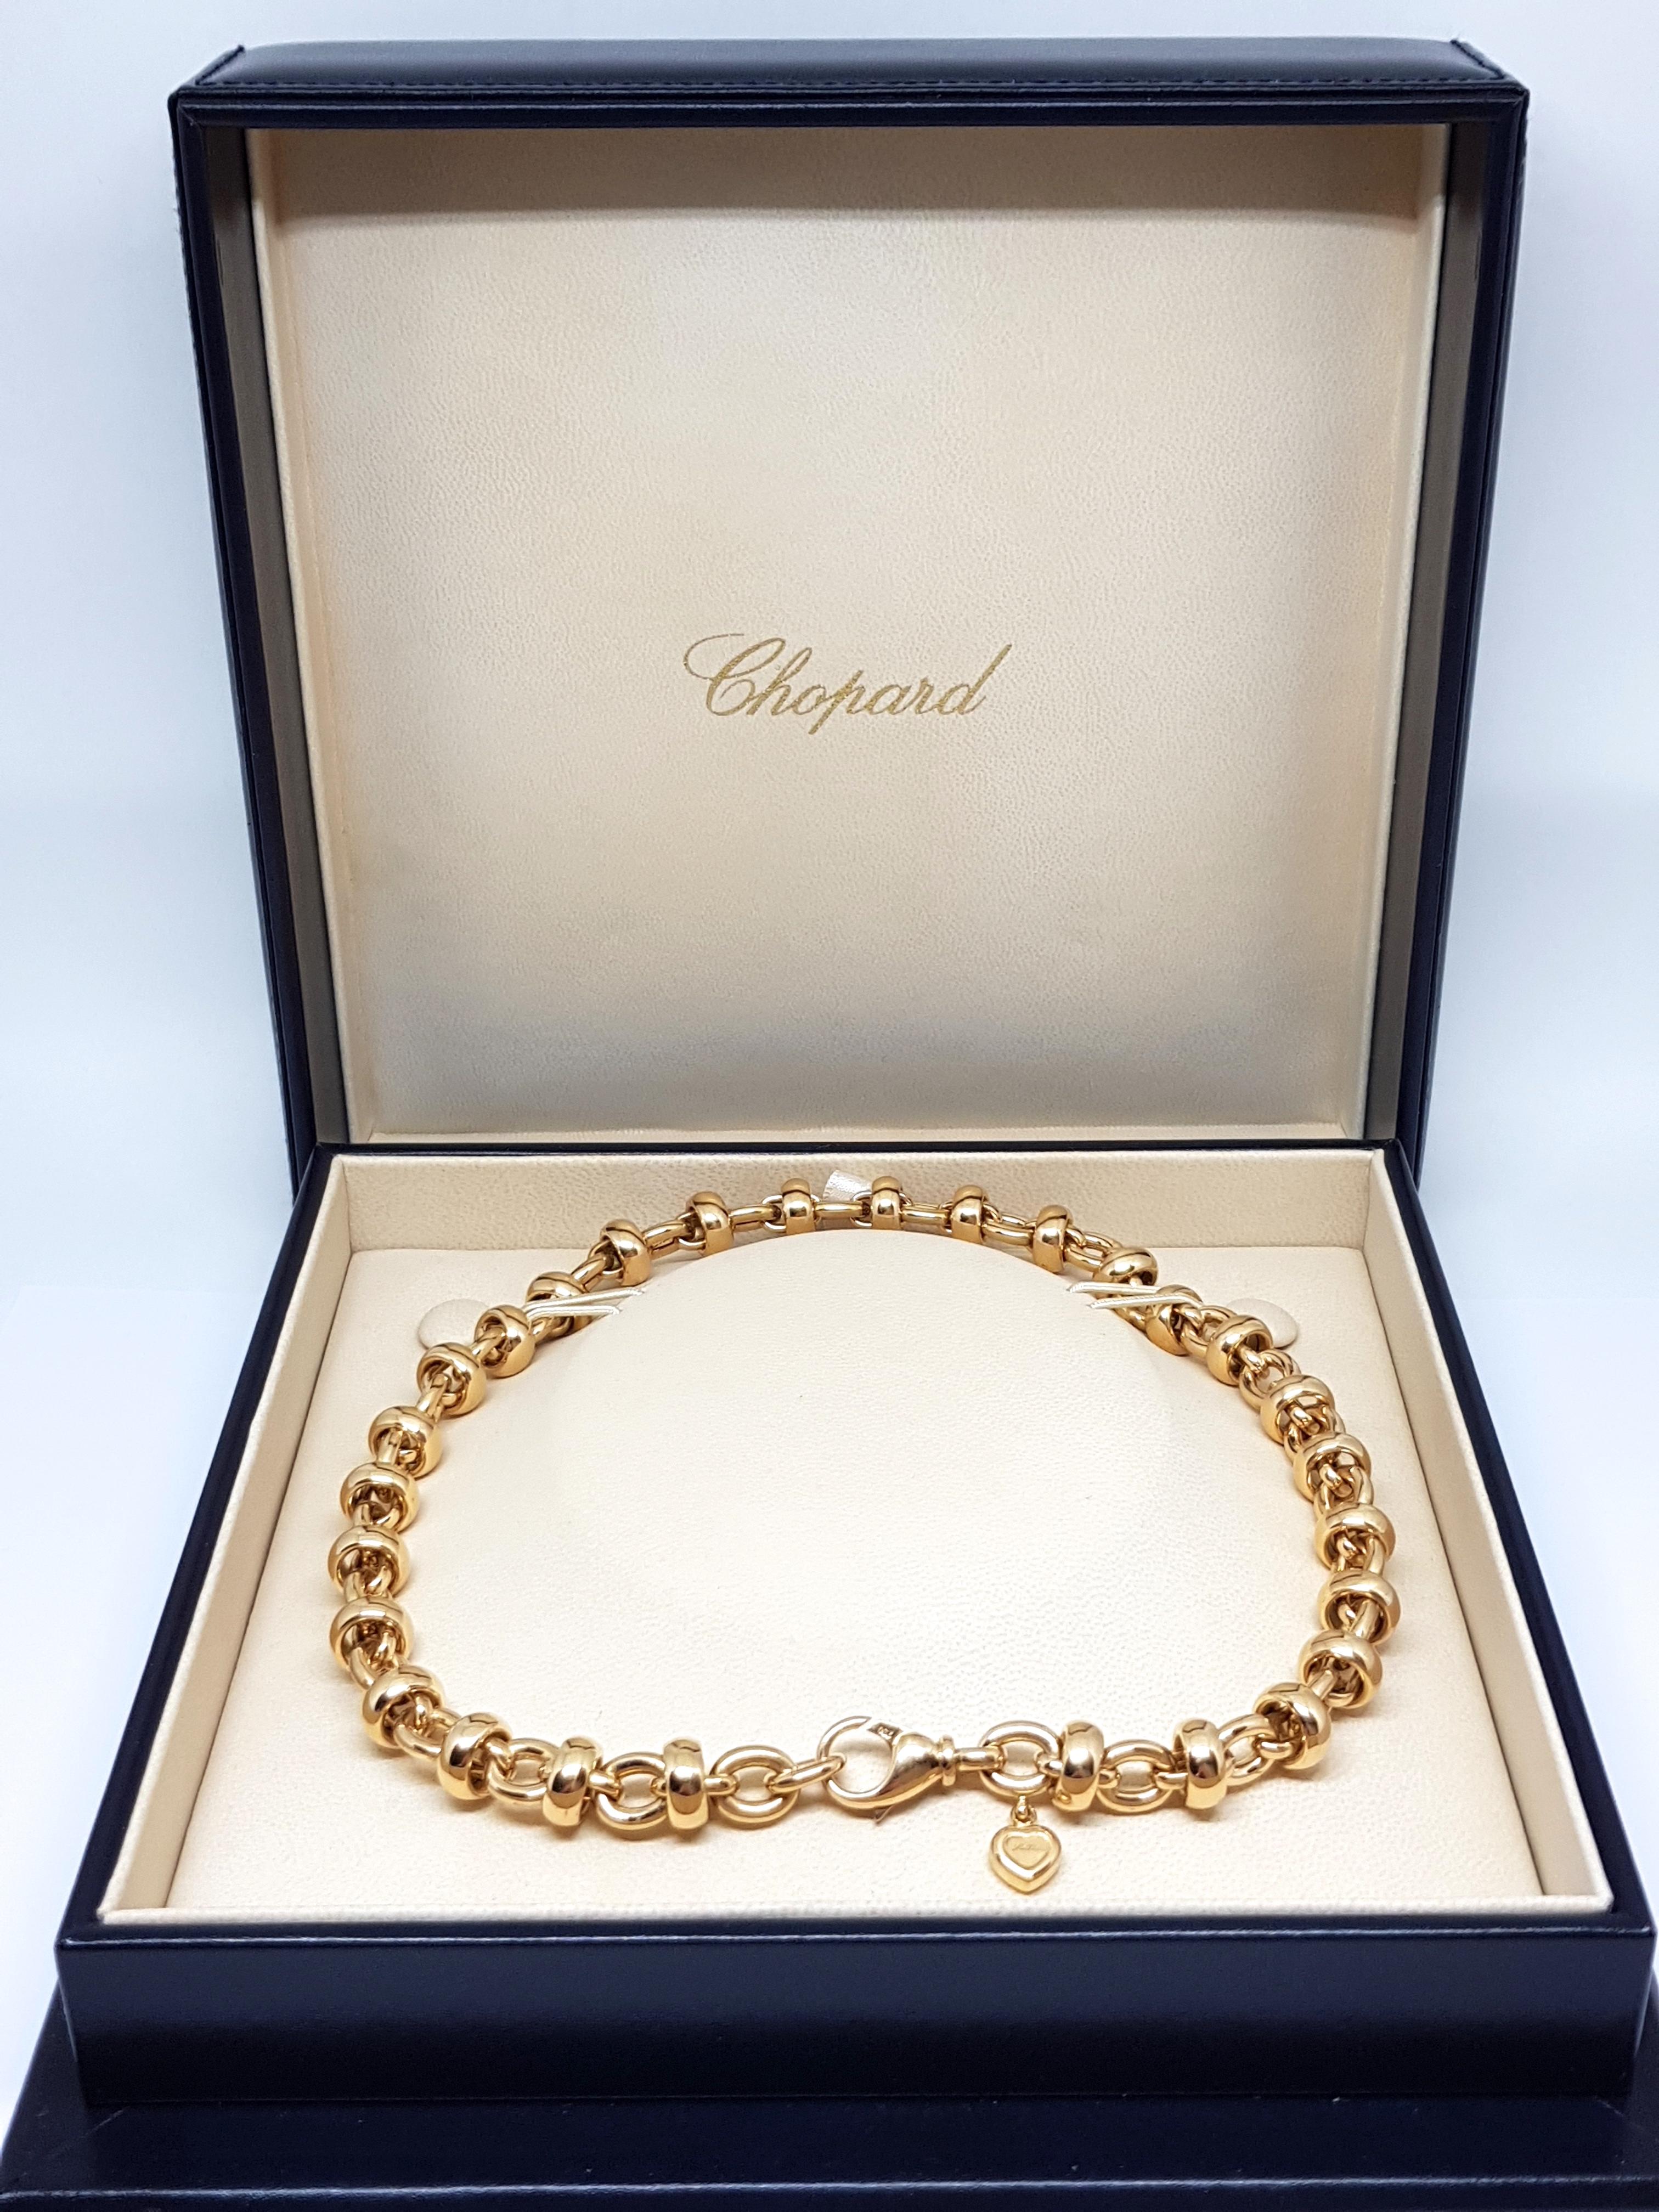 Chopard Les Chaines 18 Karat Yellow Gold Link Necklace Bracelet Set Original Box 6